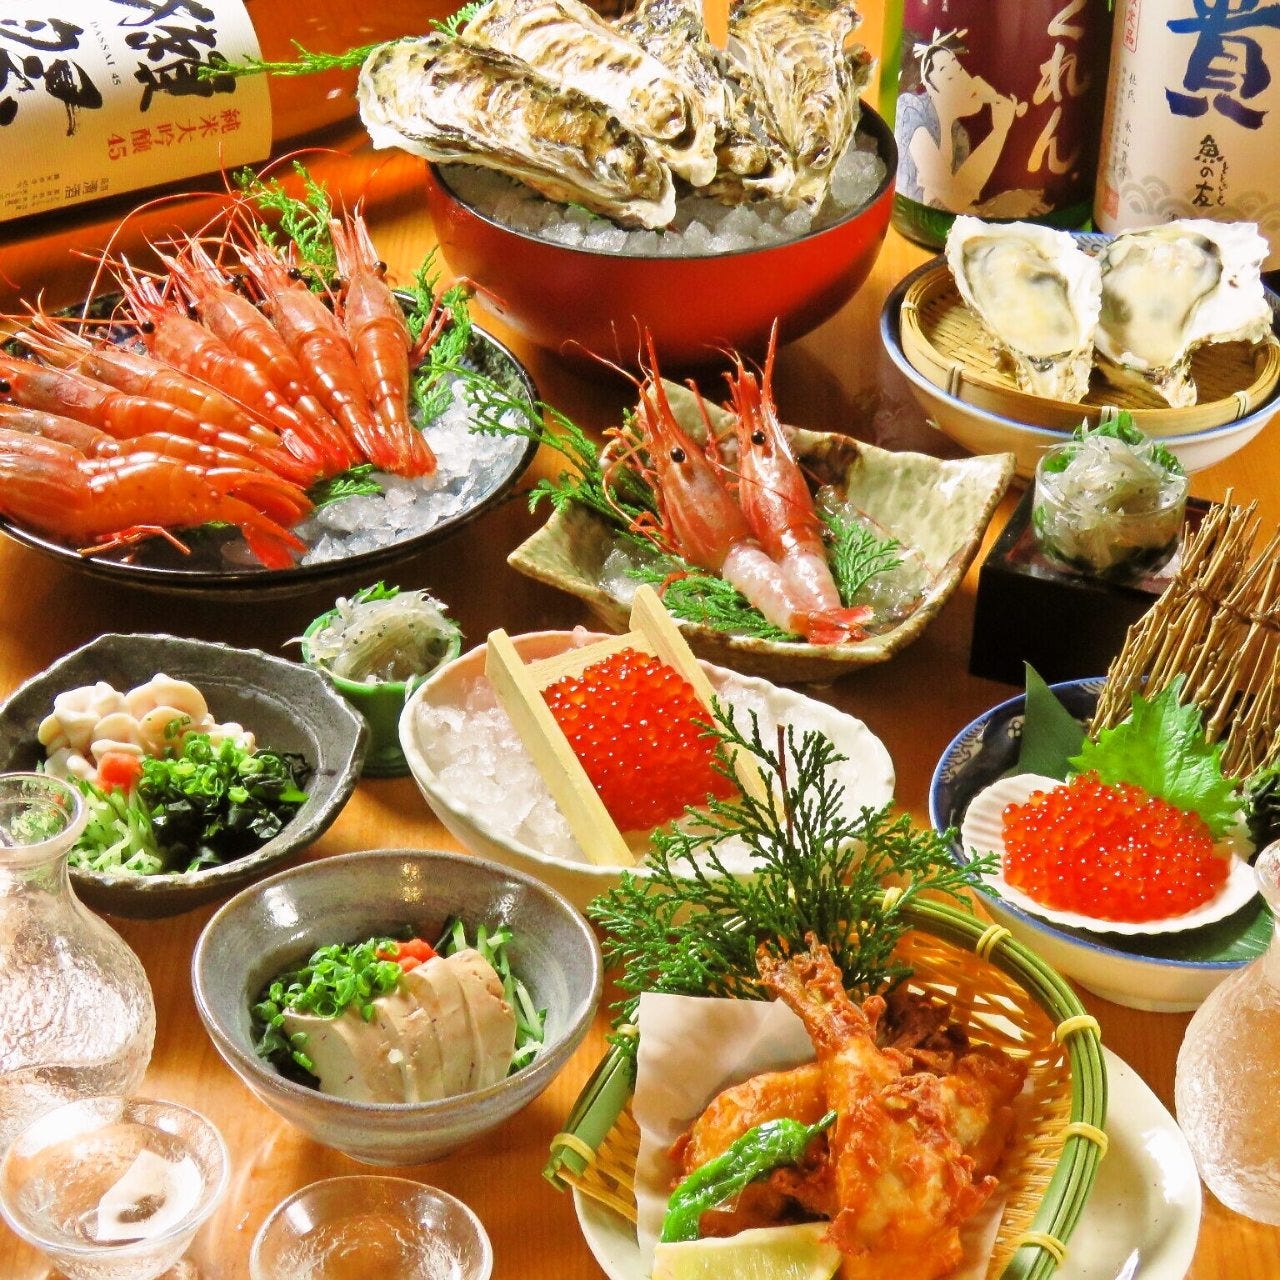 天然鮮魚、牡蠣、本まぐろと自慢の海鮮料理を堪能できます